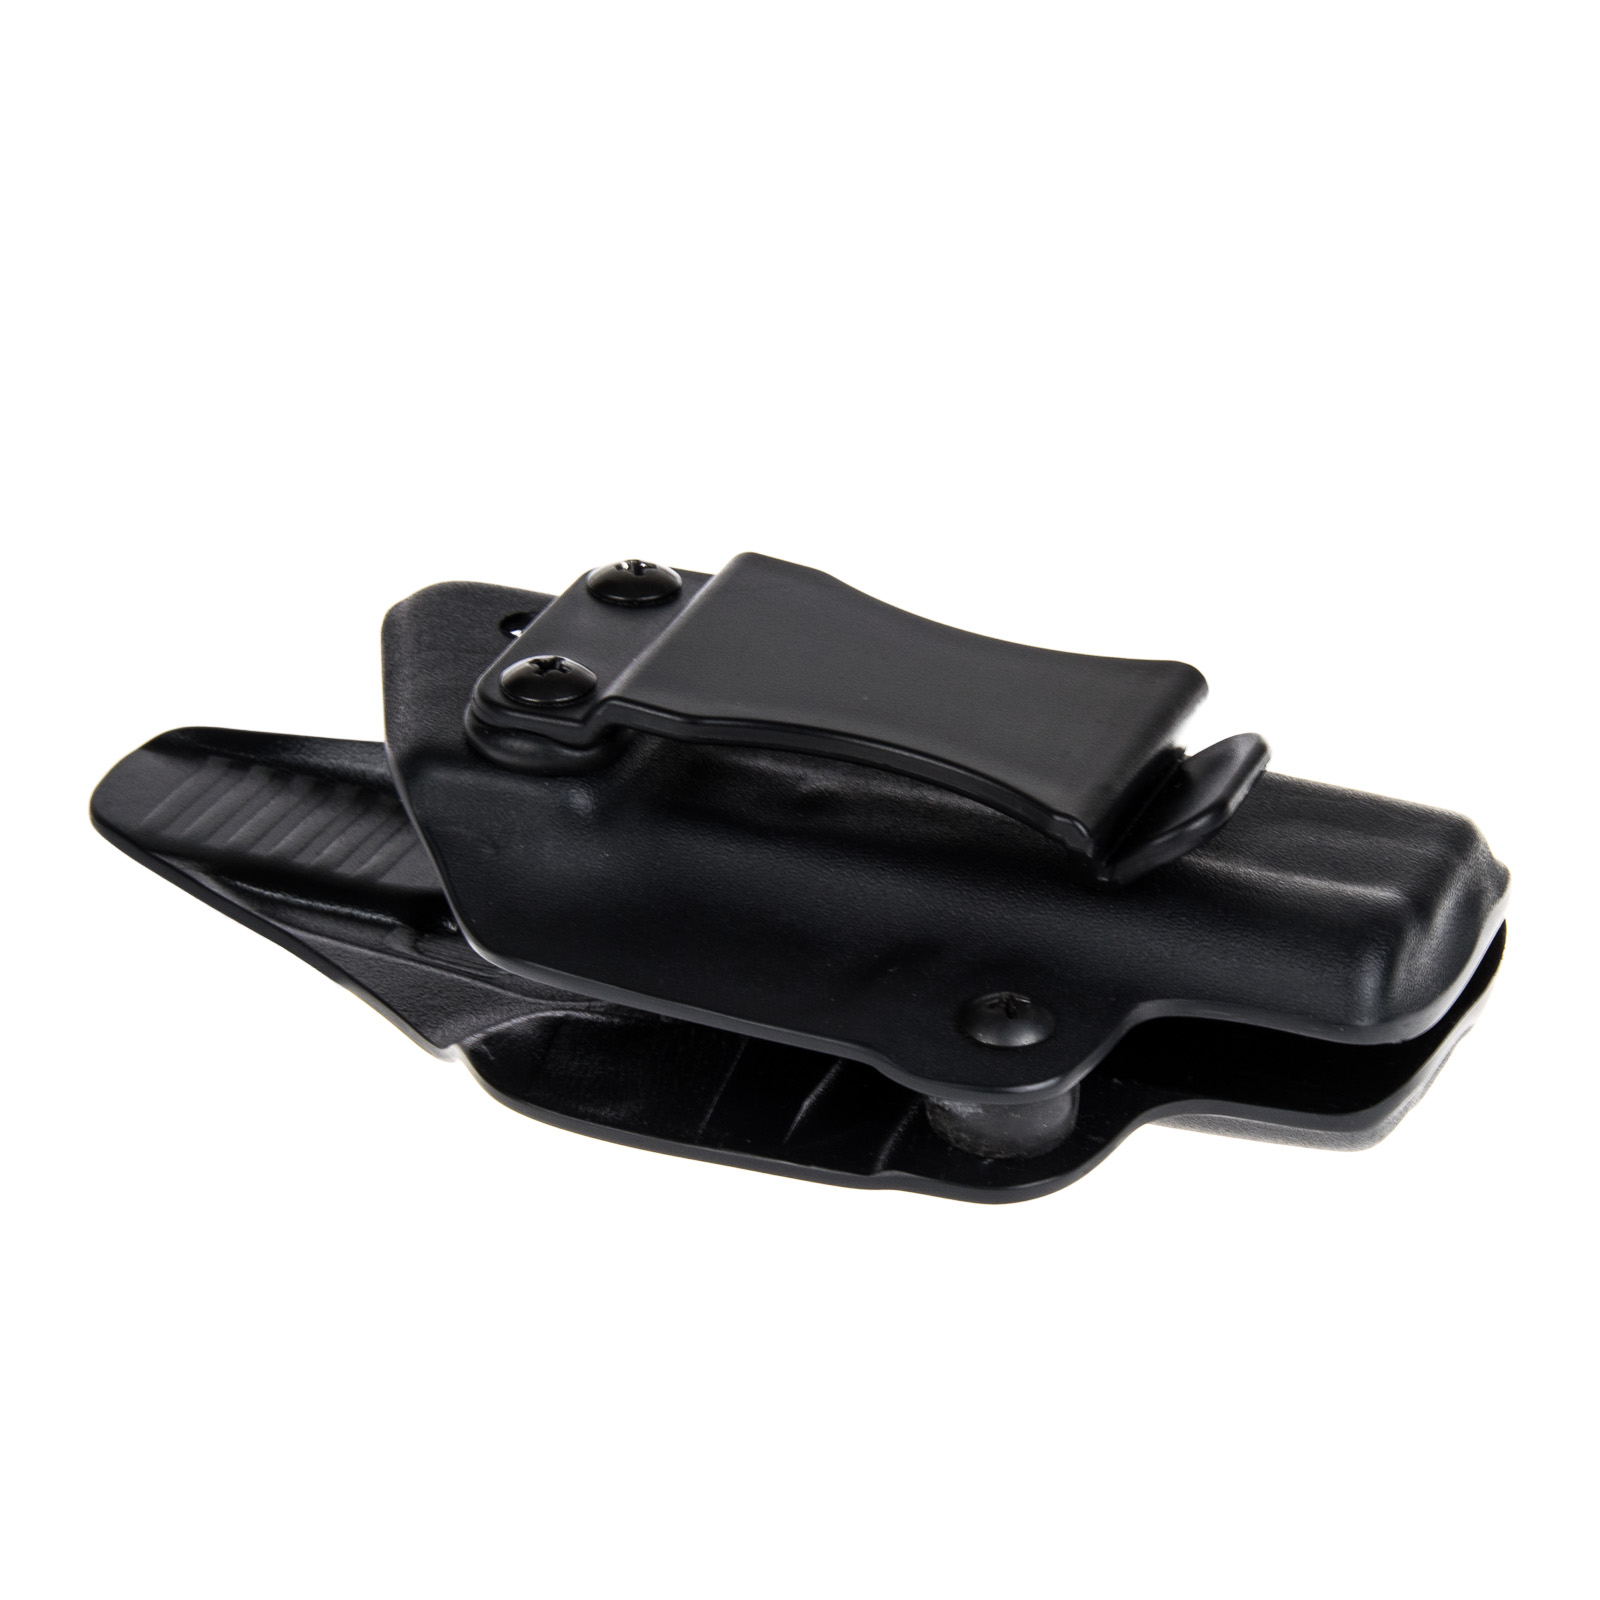 Vnitřní pouzdro RHholster, plný sweatguard, černá/černá (Walther PPK)